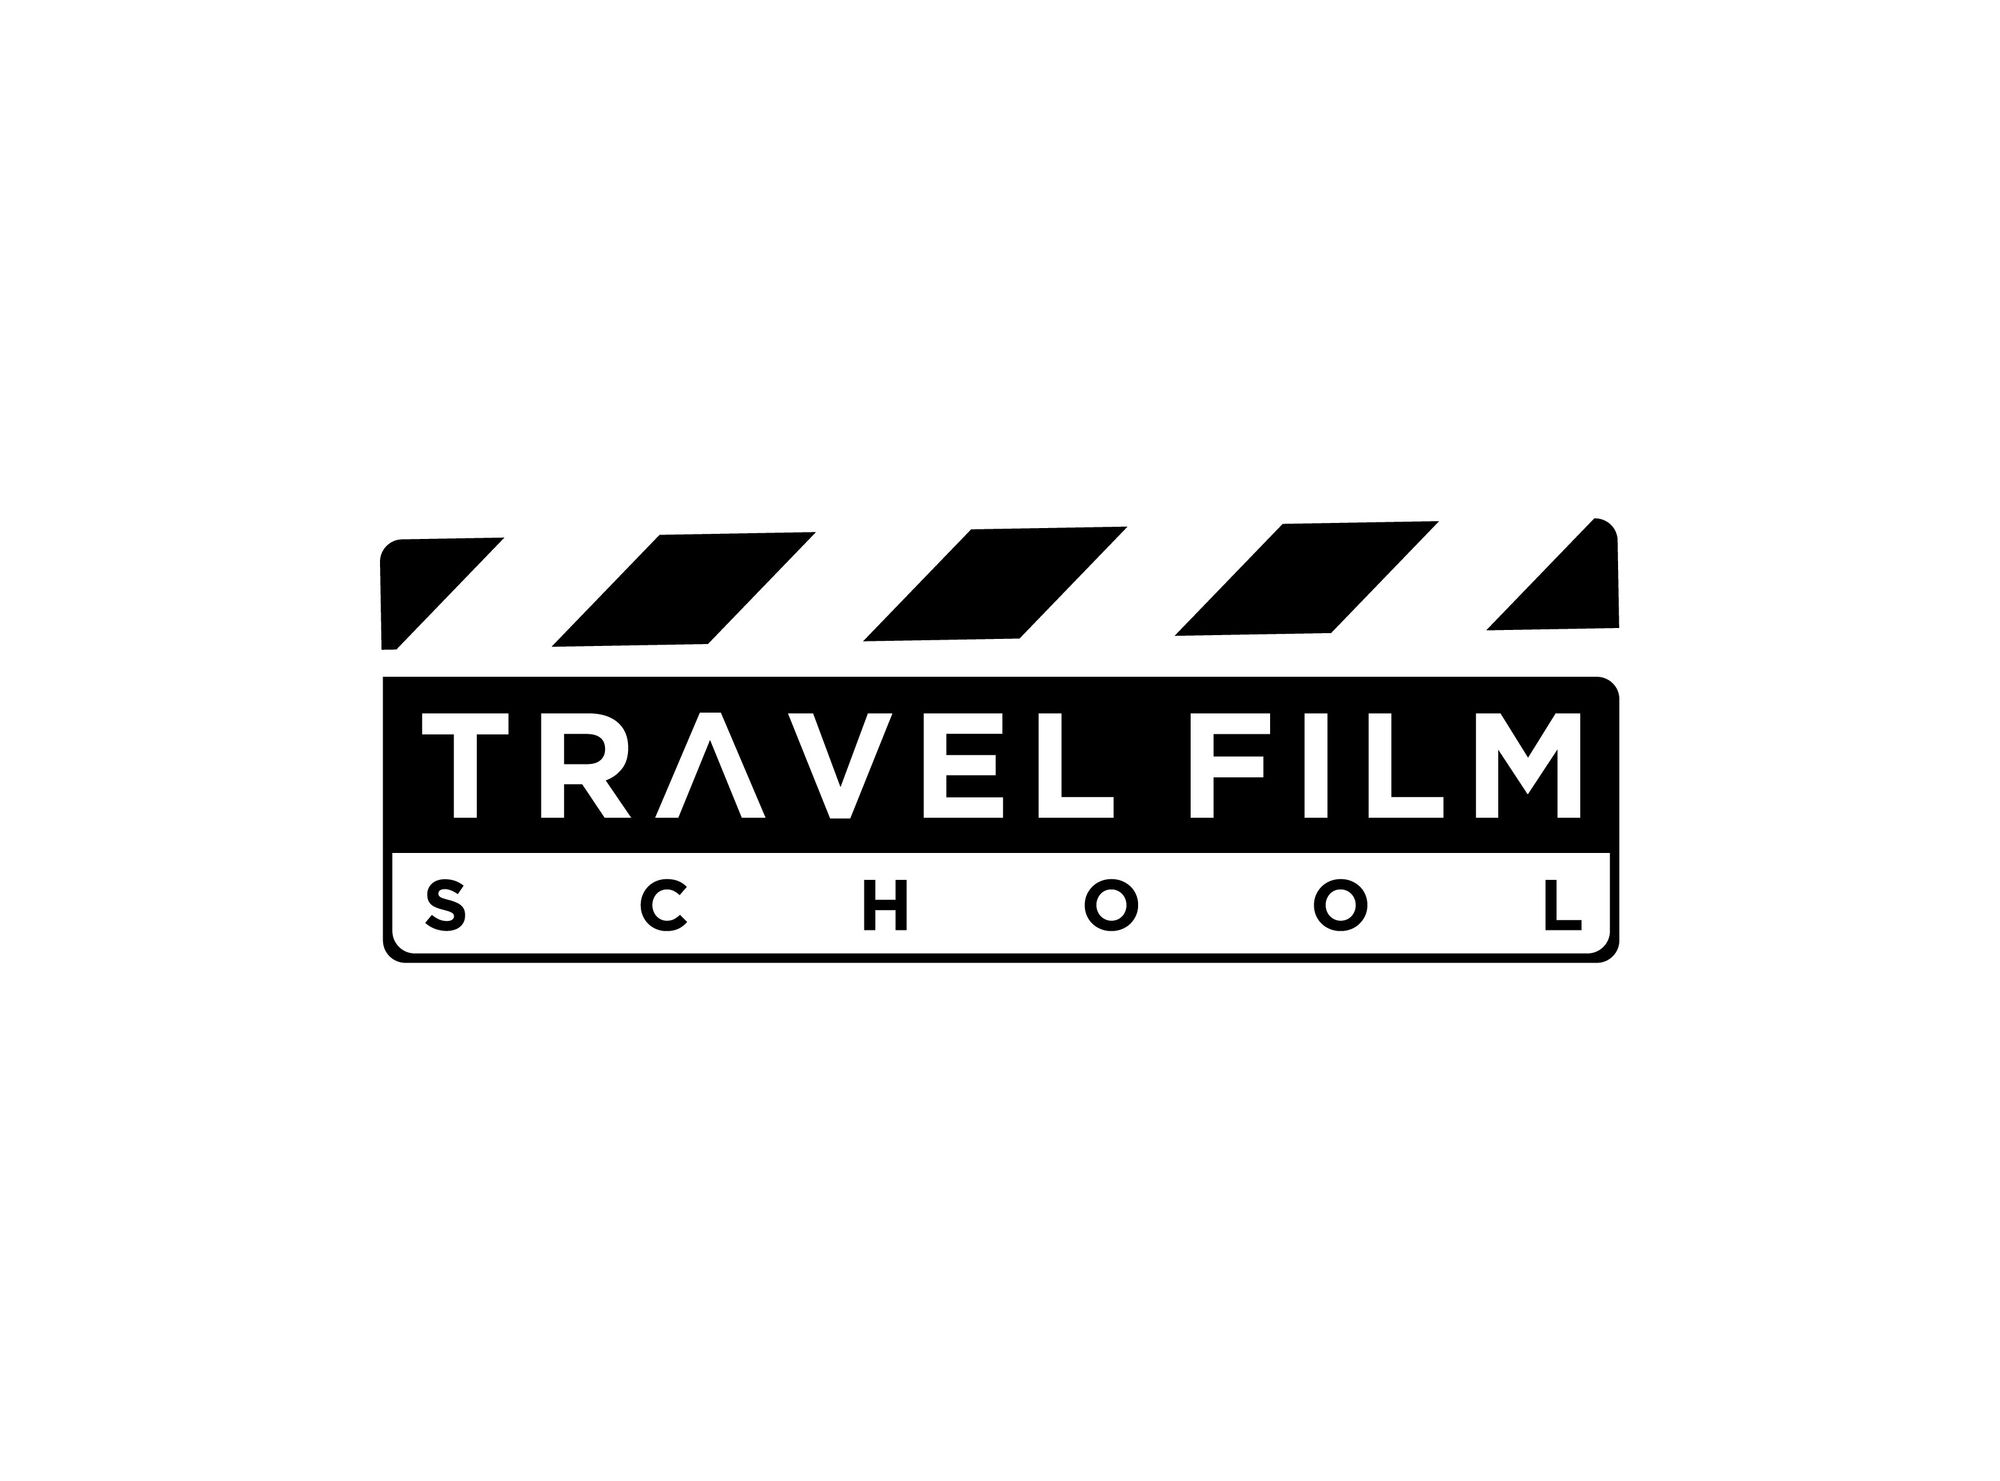 Travel Film School - Ludovico de Maistre